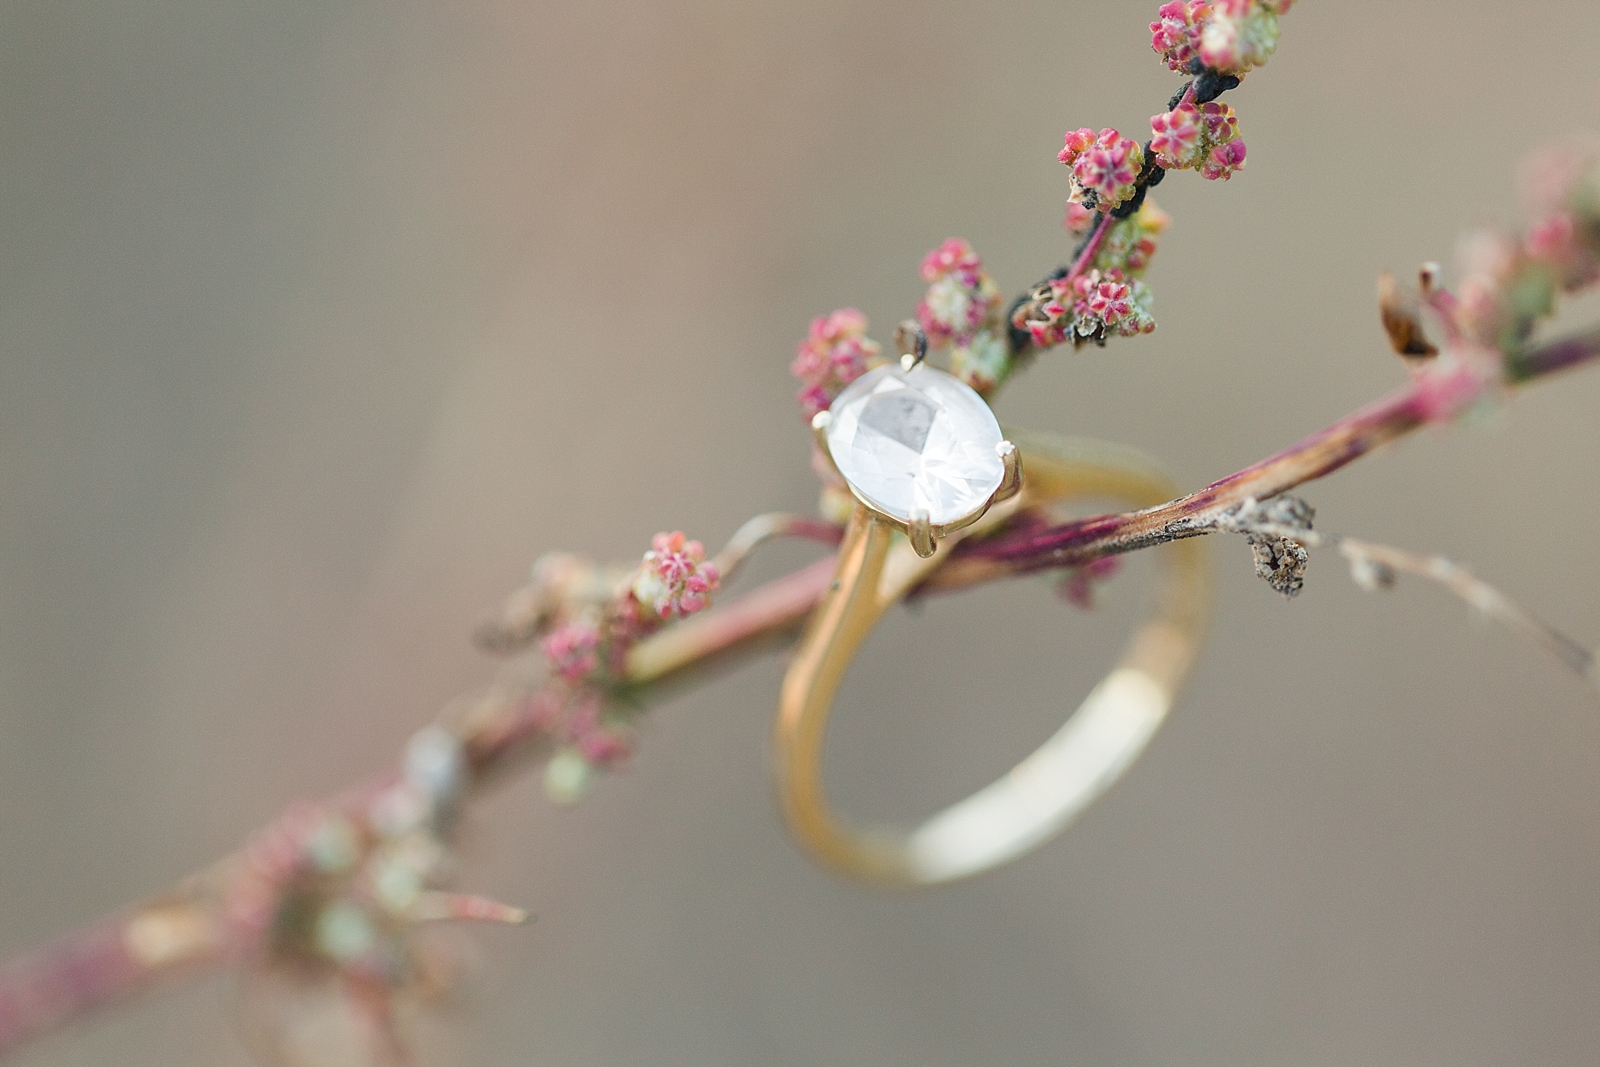 North Carolina Mountains Engagement Ring on twig Photo